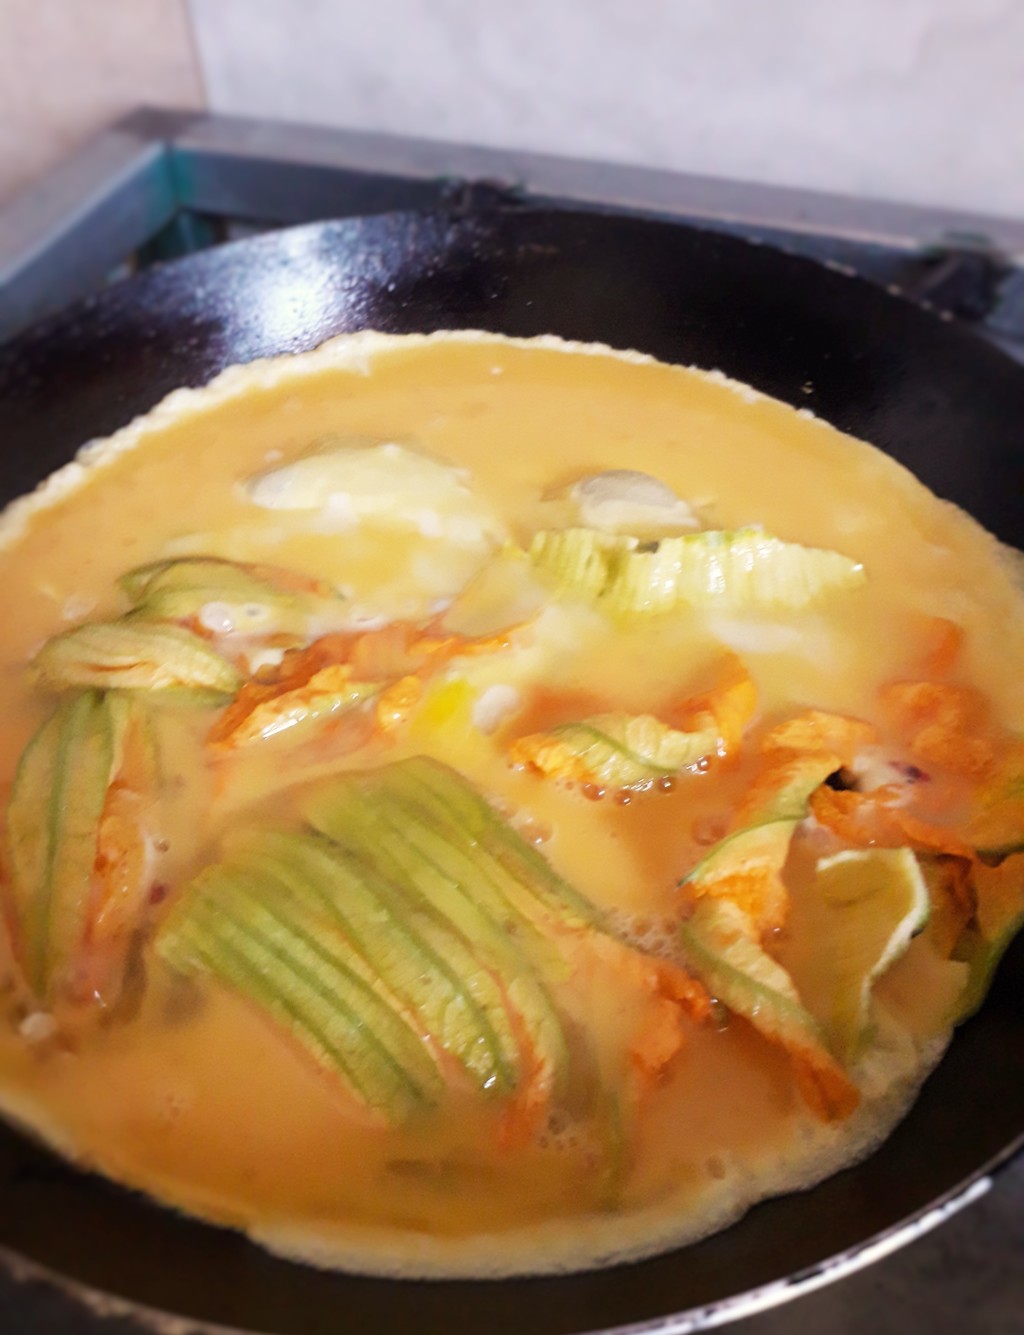 COCINA. El omelette unirá todos los ingredientes. (ESPECIAL)
